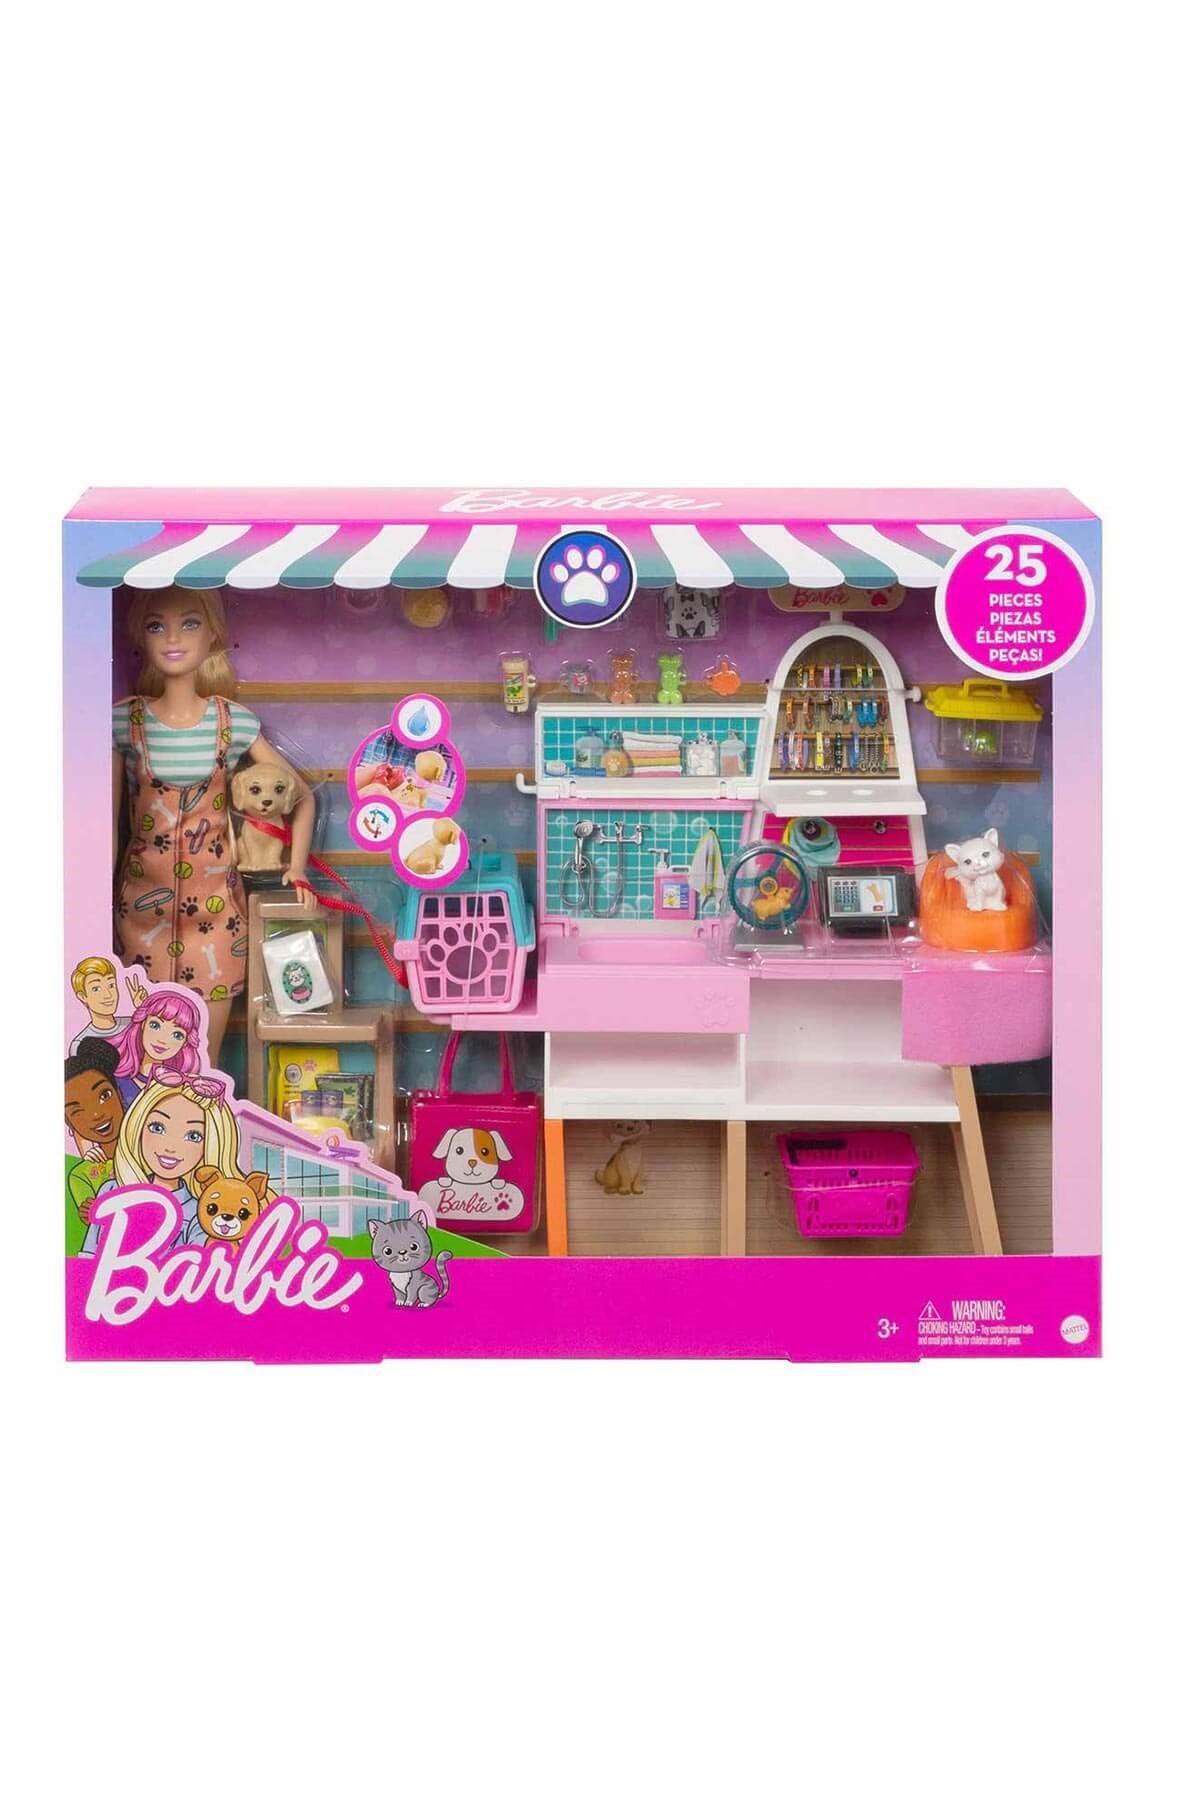 Barbie ve Evcil Hayvan Dükkanı Oyun Seti GRG90